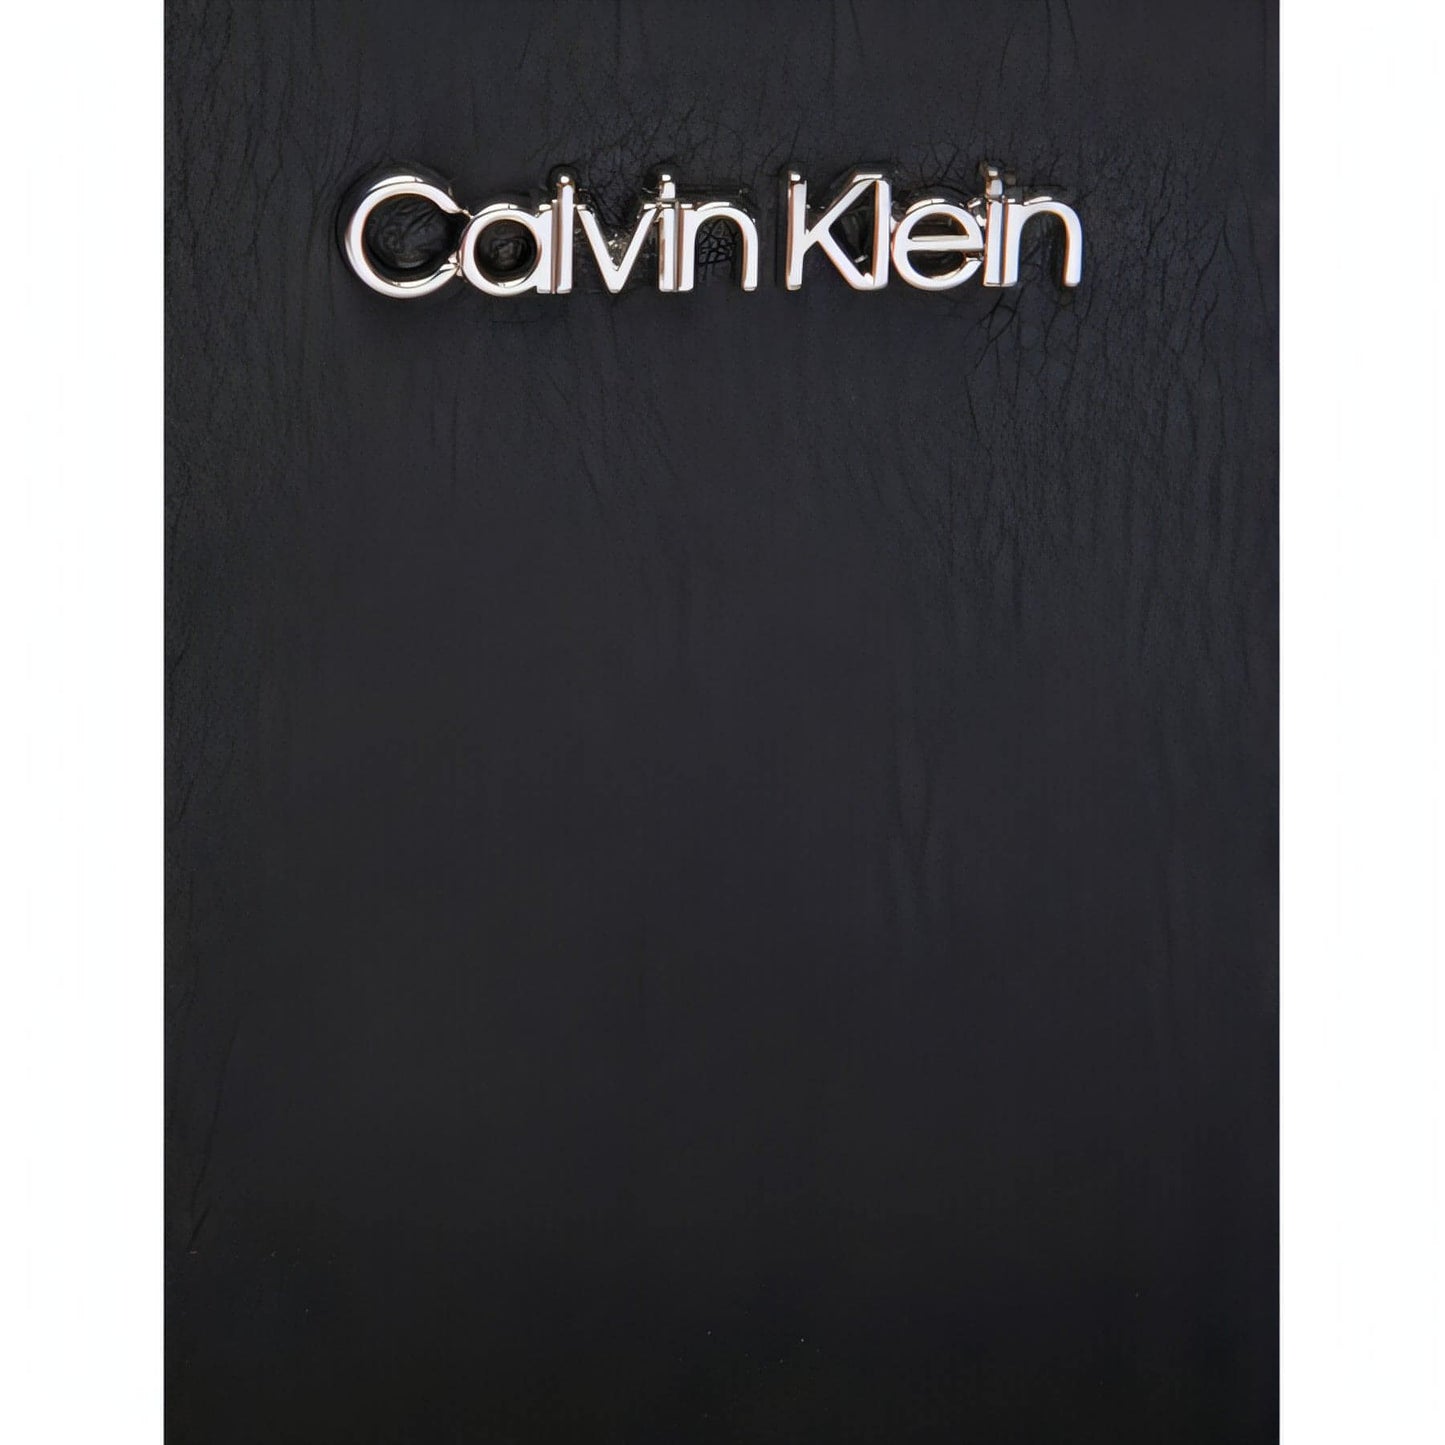 CALVIN KLEIN moteriškas juodas krepšys